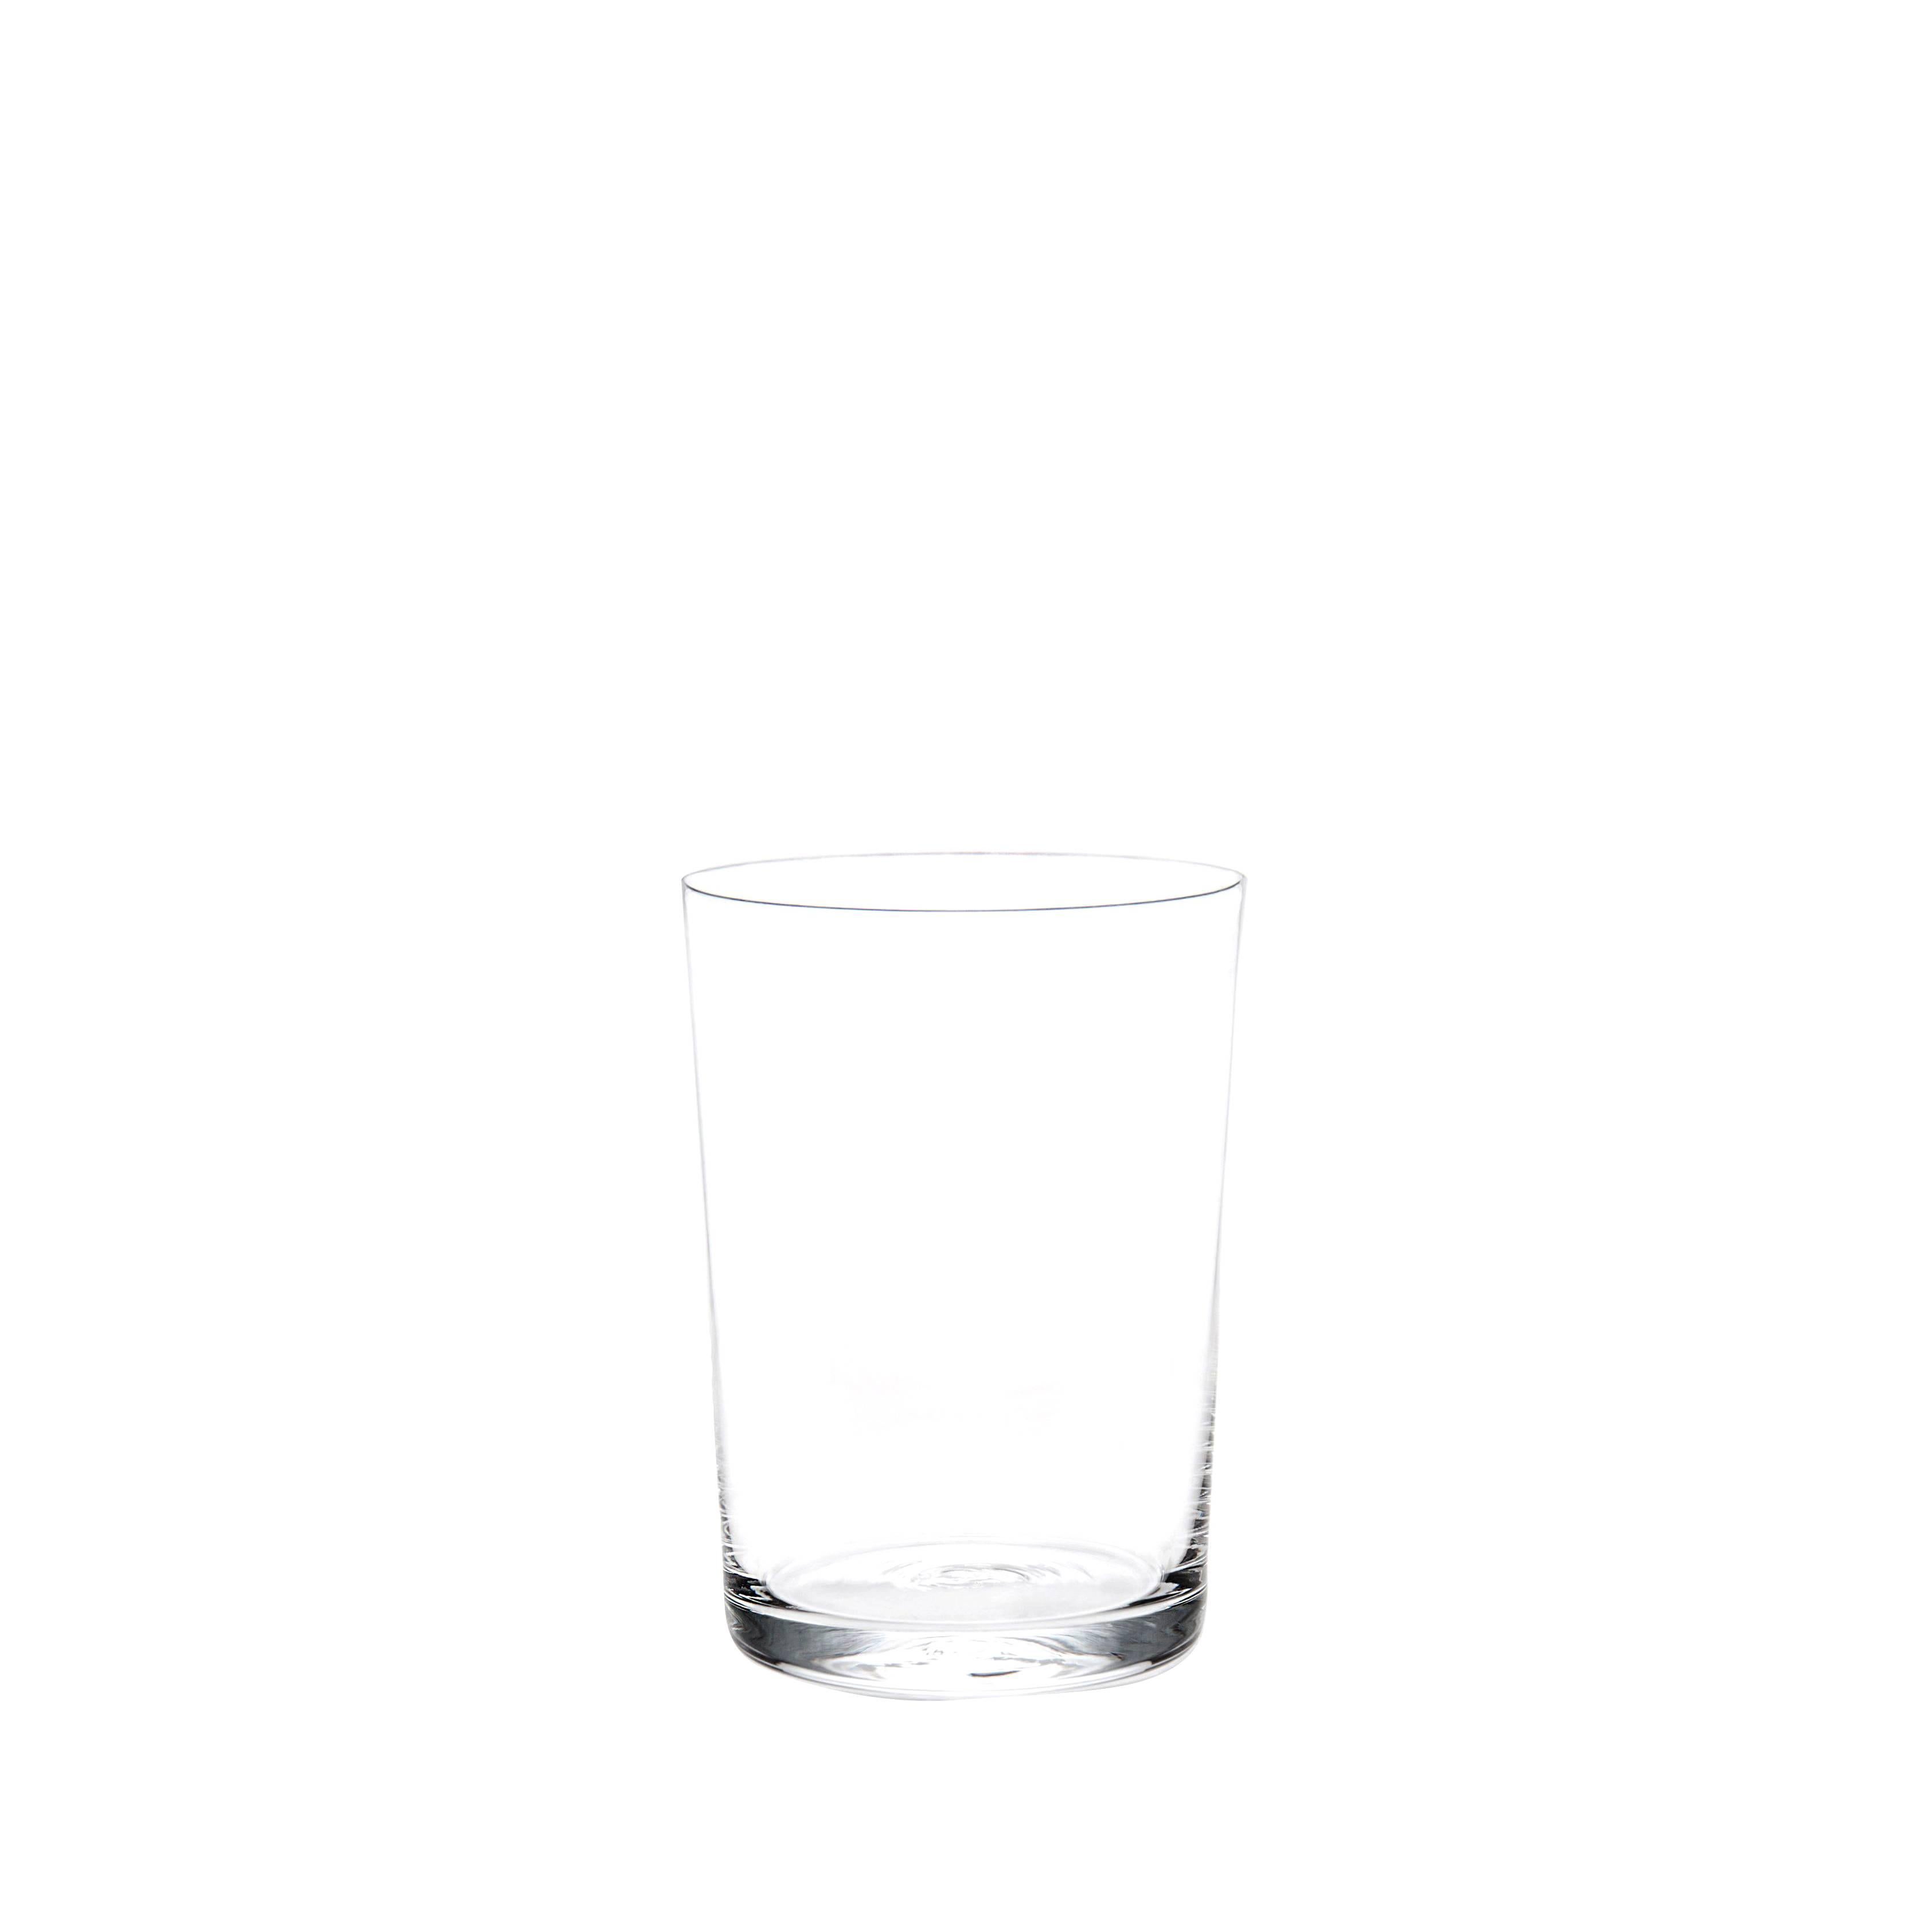 Ensemble de 12 verres  eau Deborah Ehrlich en cristal simple, souffls  la main en Sude